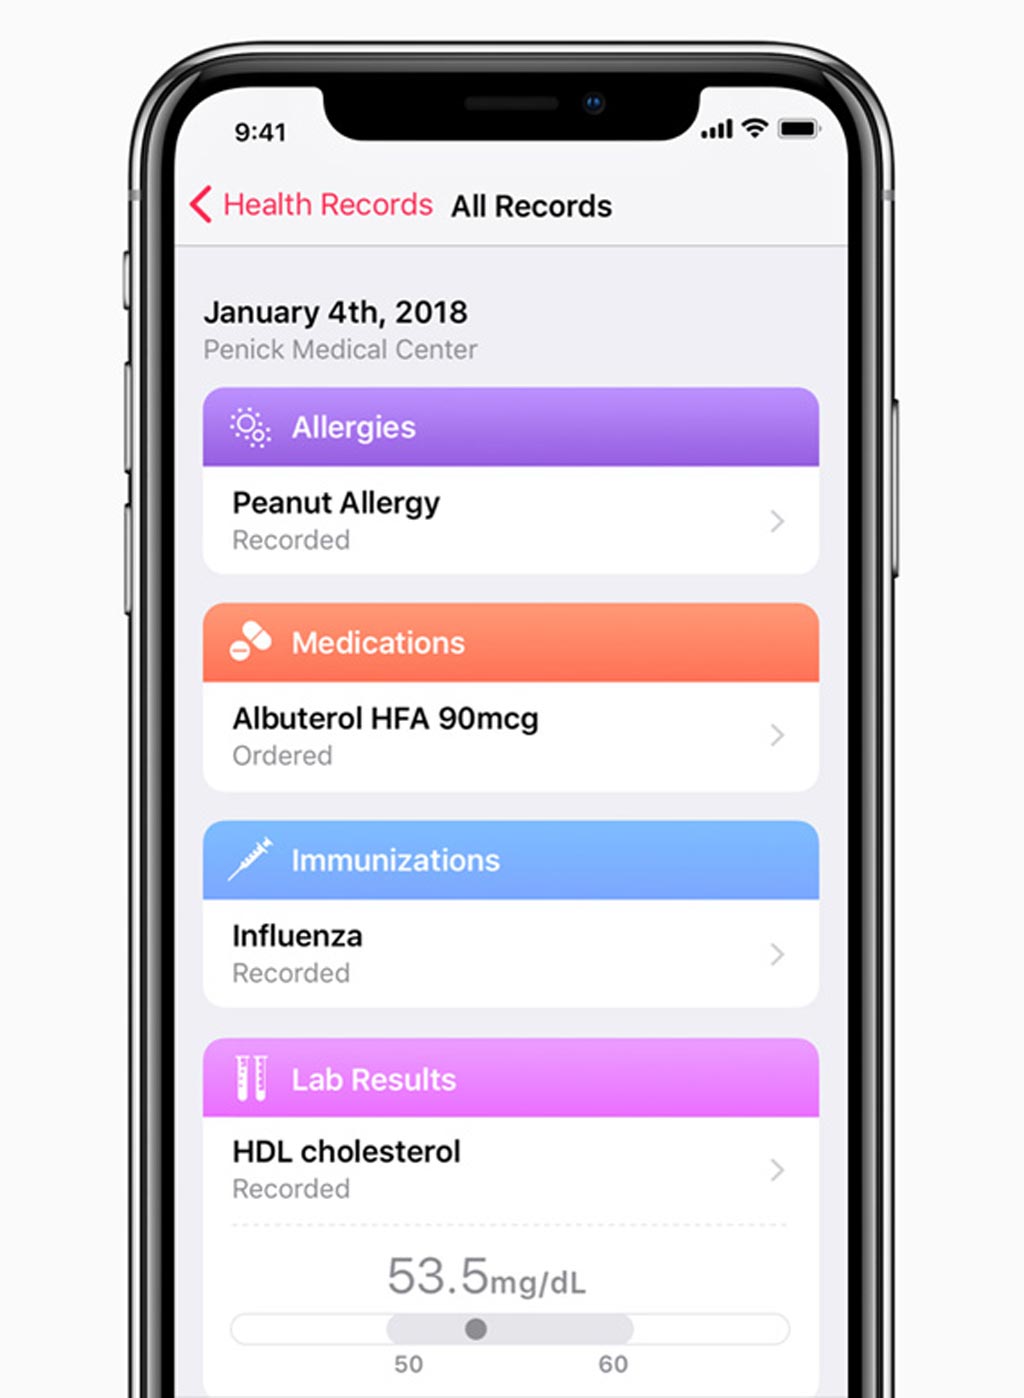 Apple PHR способна систематизировать медицинские записи в четком и понятном хронологическом порядке (фото любезно предоставлено Apple).